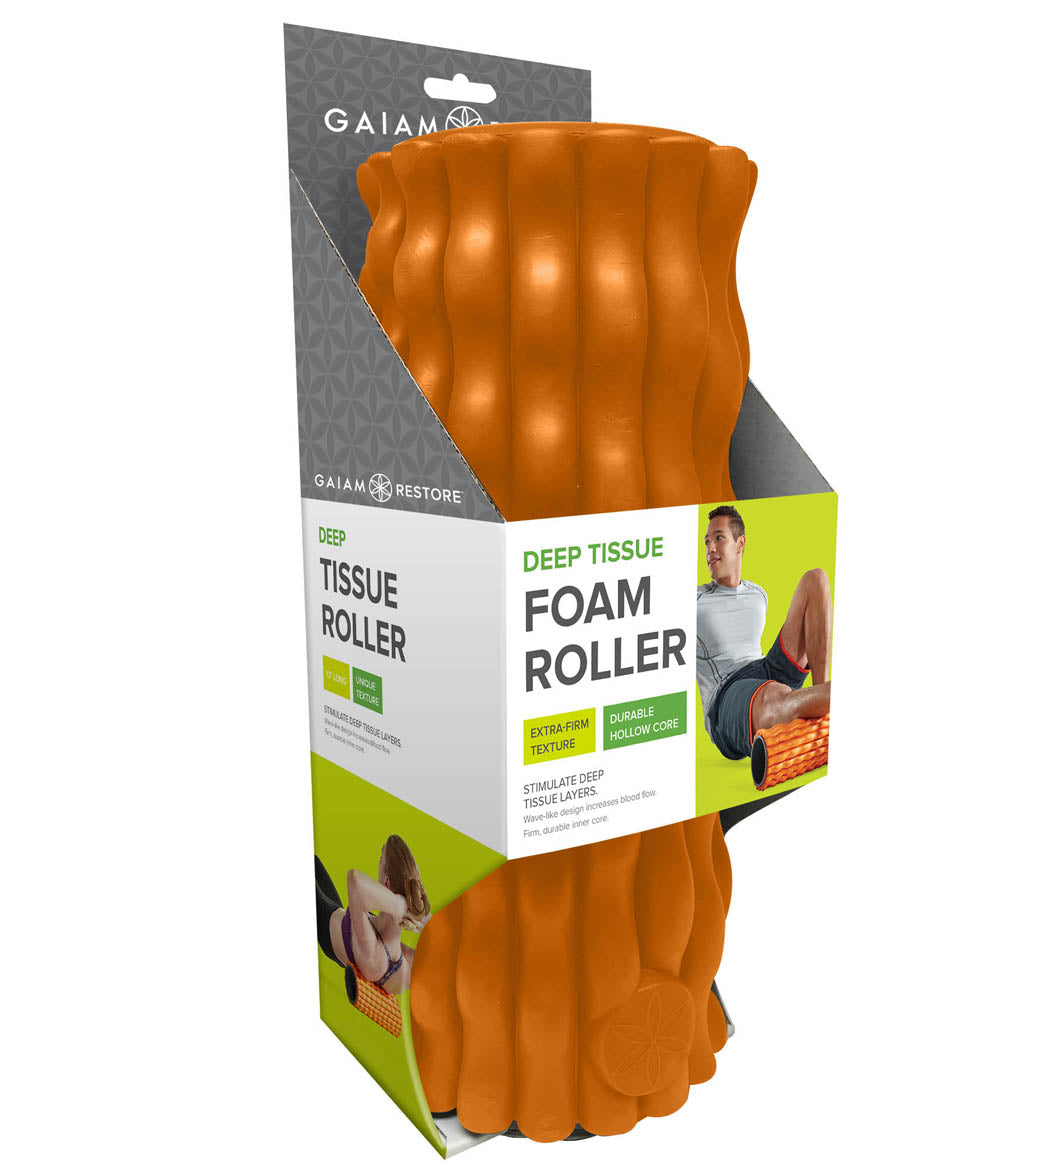 Gaiam Restore Total Body 36 Foam Roller